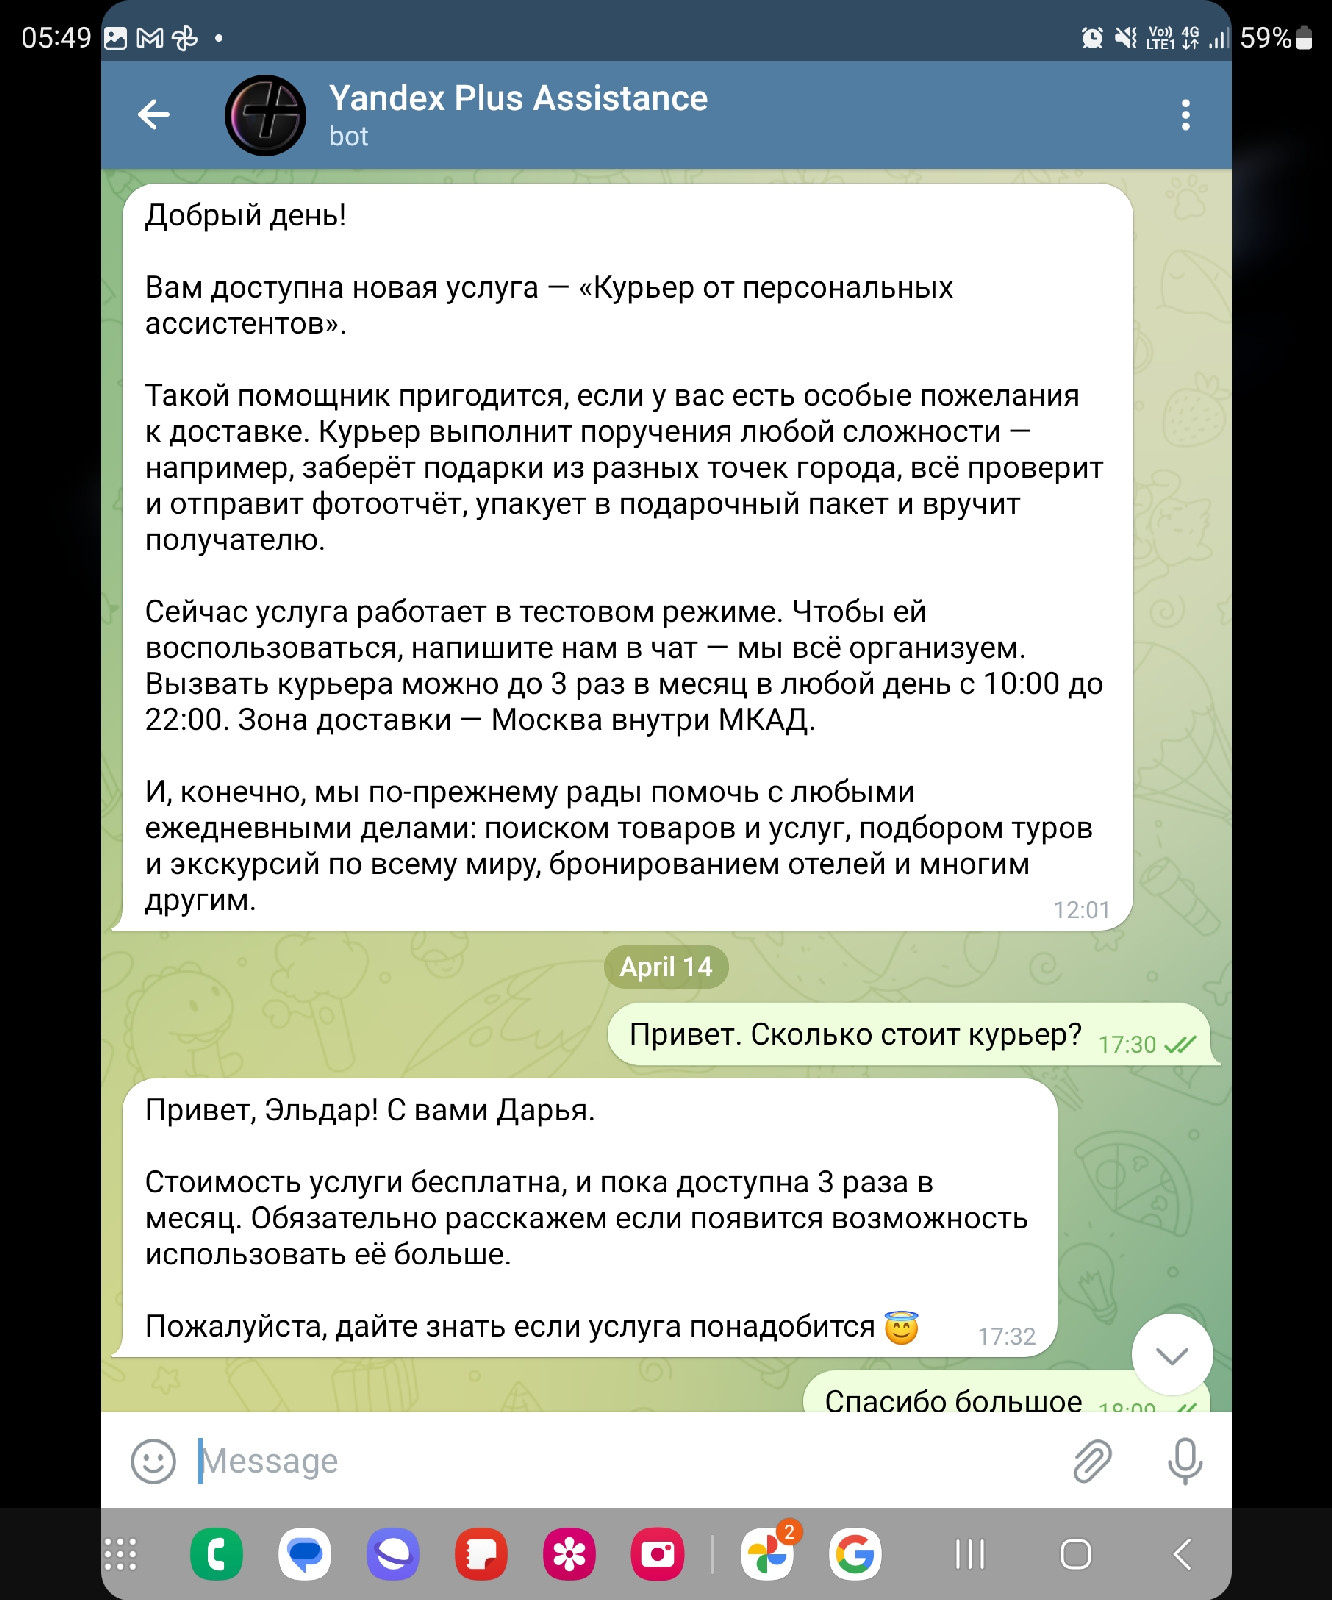 Консьерж-сервис от «Яндекс.Плюс». Что умеет ассистент и как работает